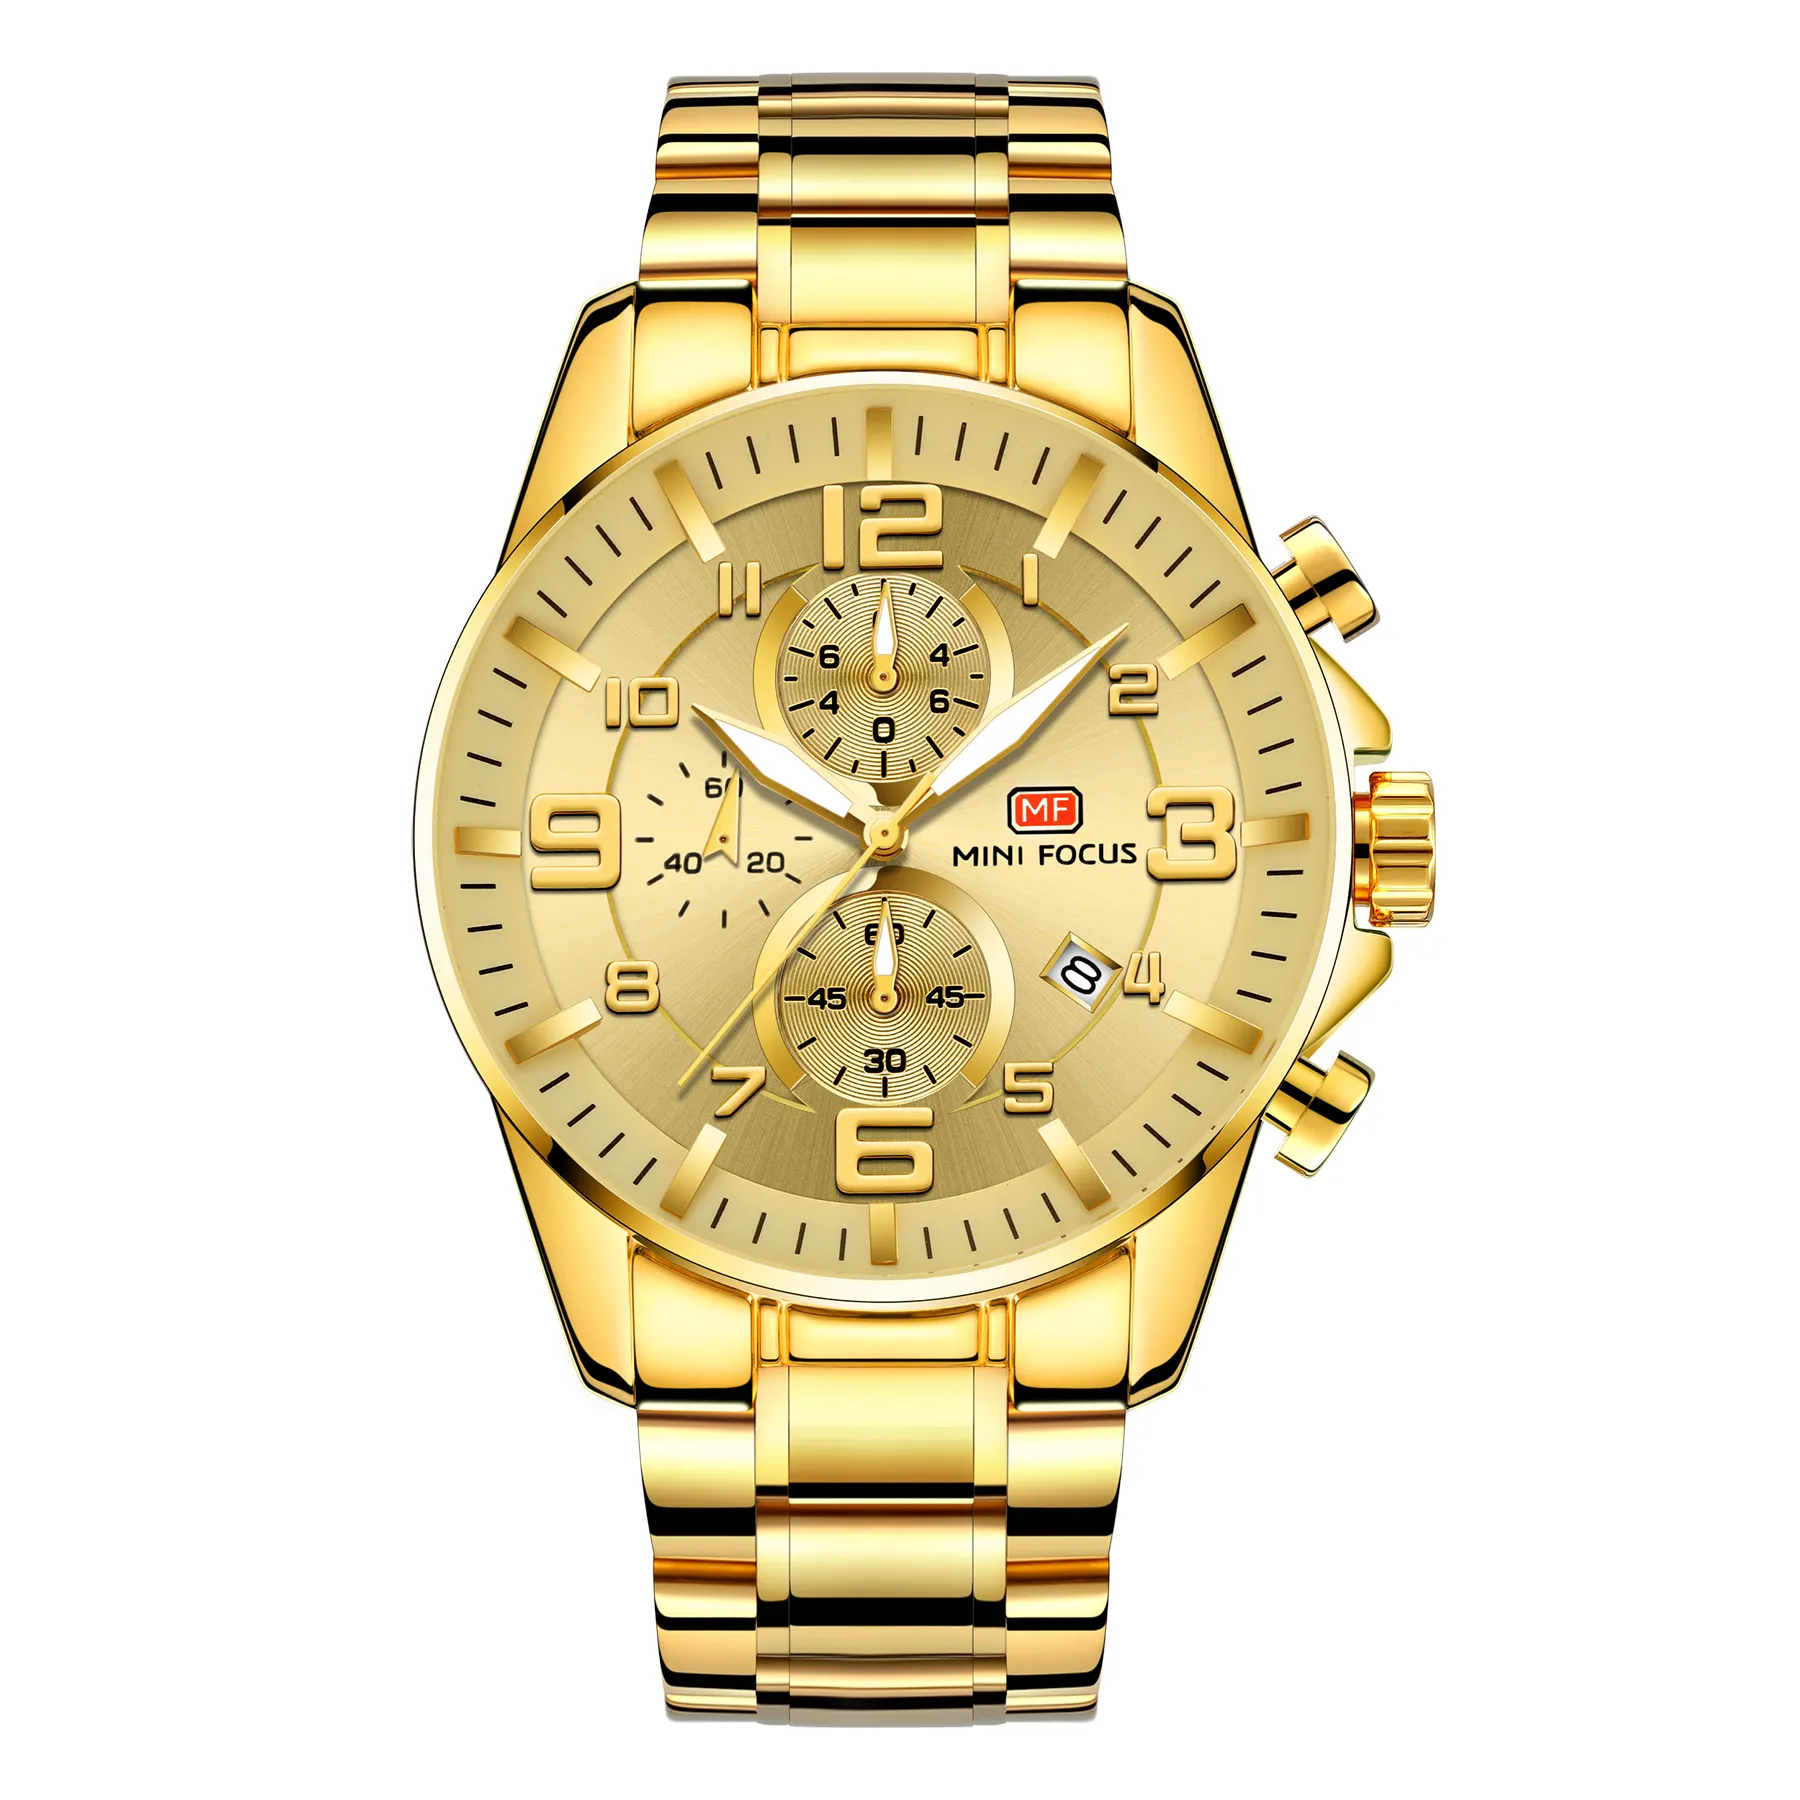 Mini focus 0278 relógio de pulso 3atm, relógio de aço inoxidável resistente à água, relógios traseiros, liga de ouro, quartzo, analógico, relógio de pulso masculino